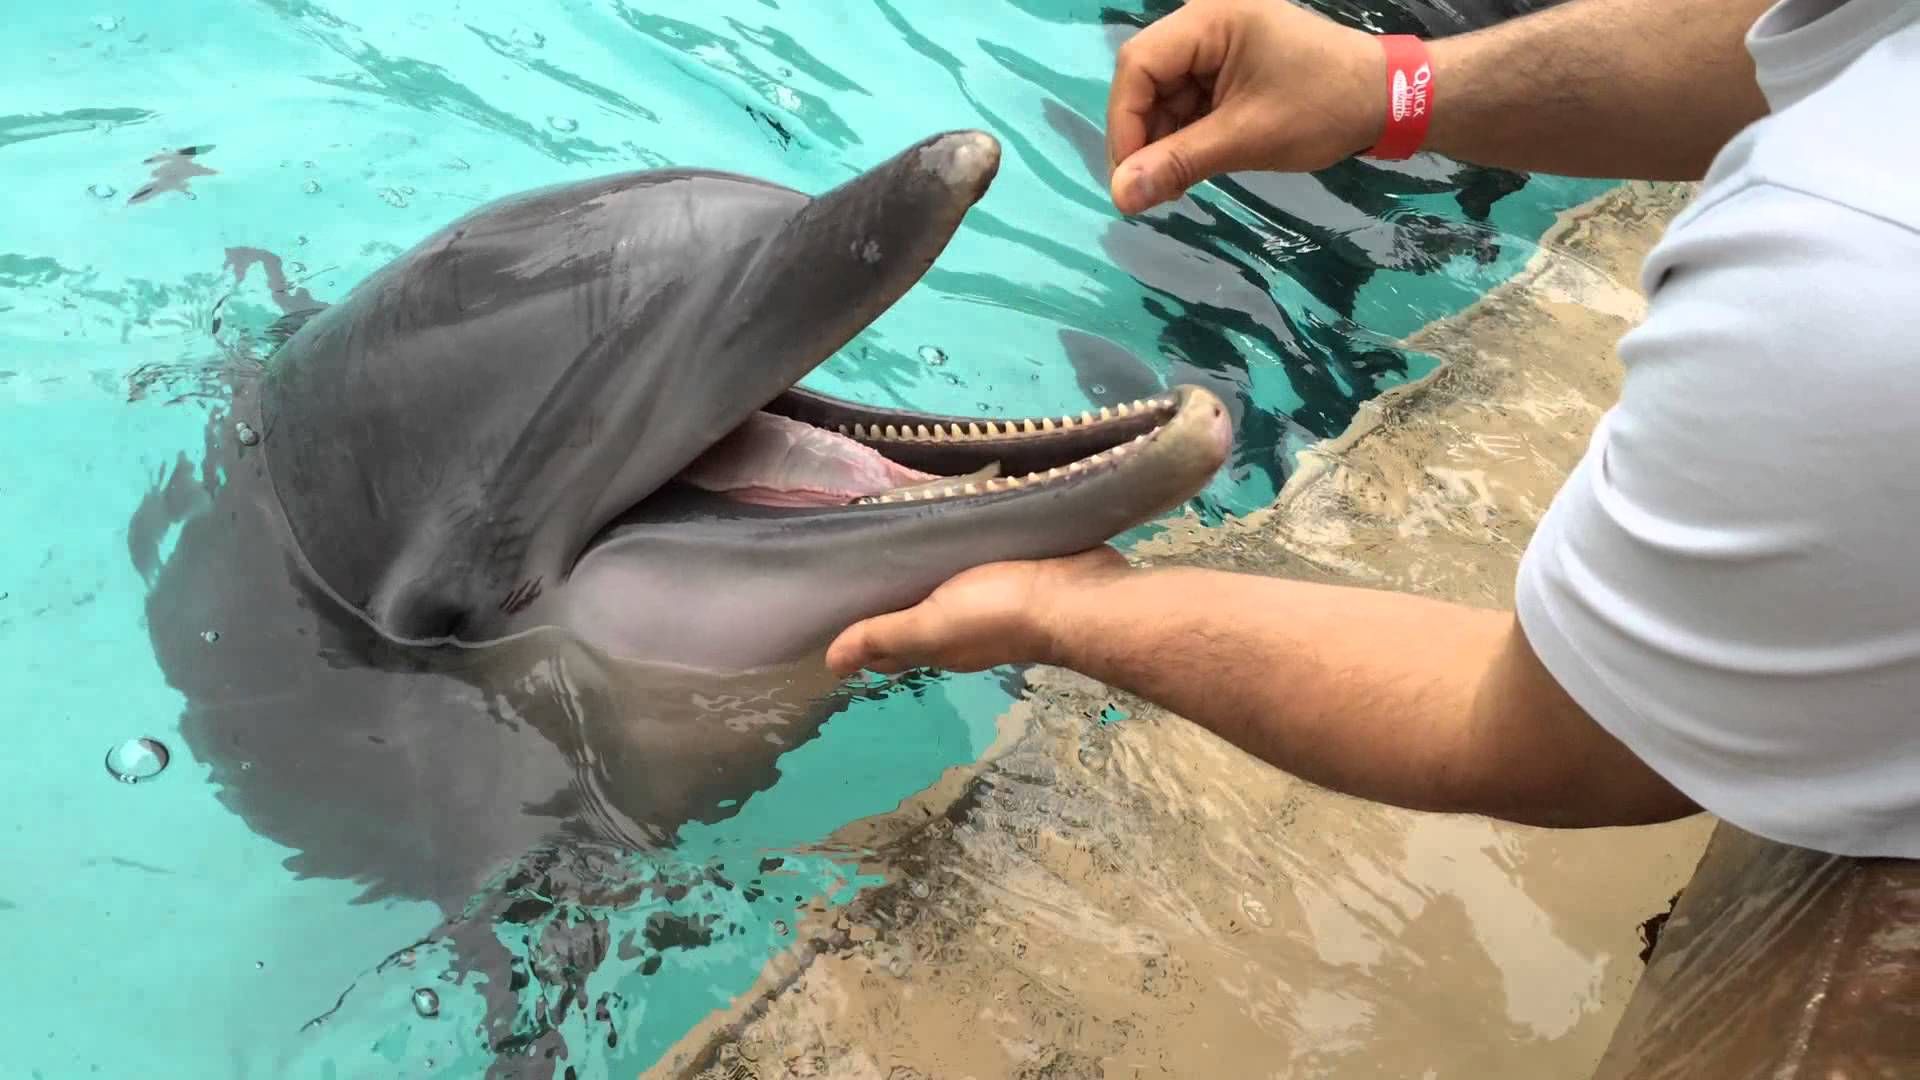 Feeding dolphins in Seaworld, orlando,Fl. Dec 26,2014 - YouTube